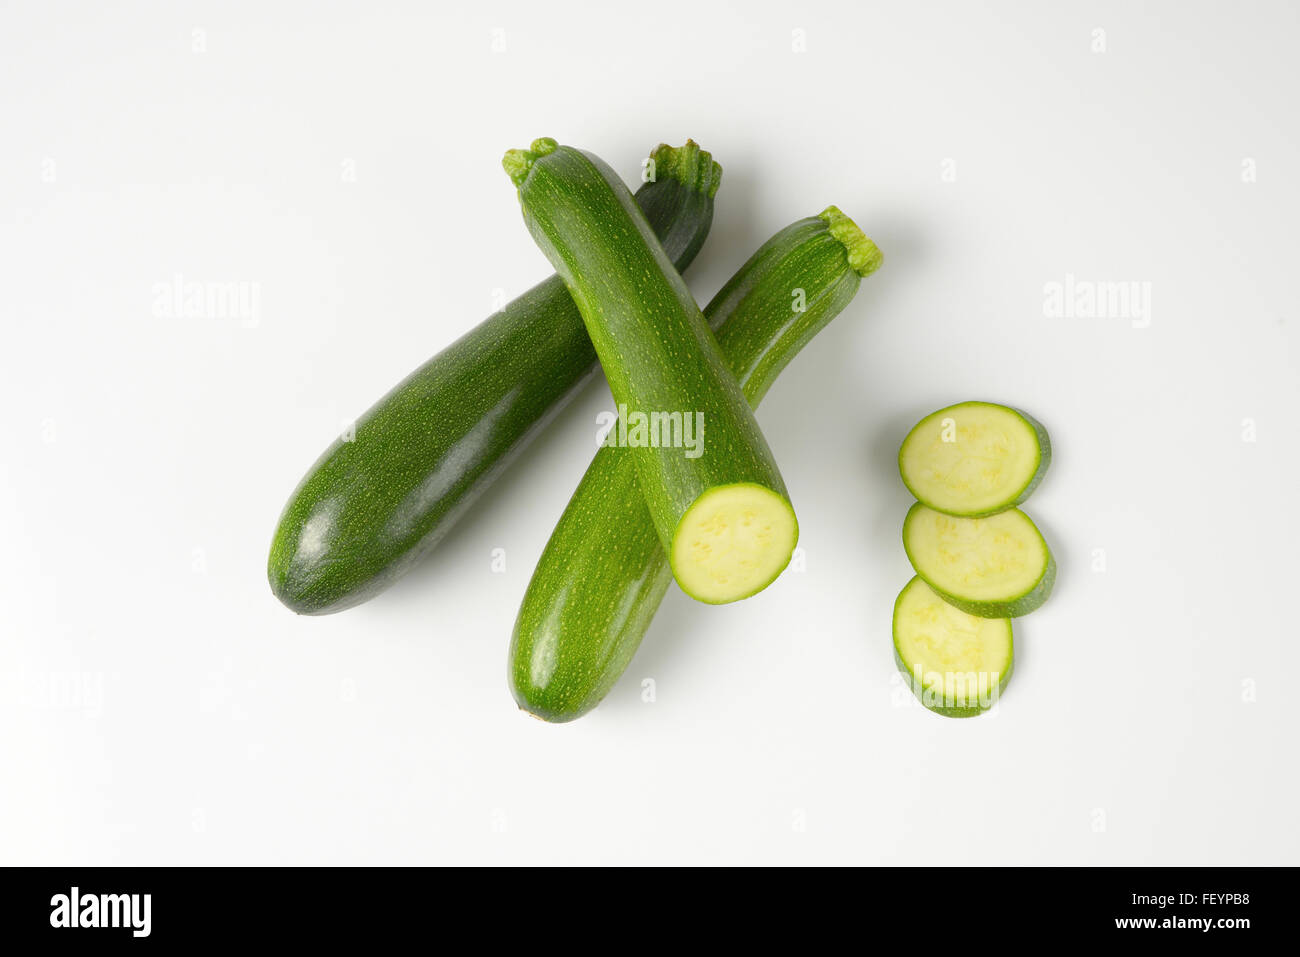 Intero e fette di zucchine su sfondo bianco Foto Stock